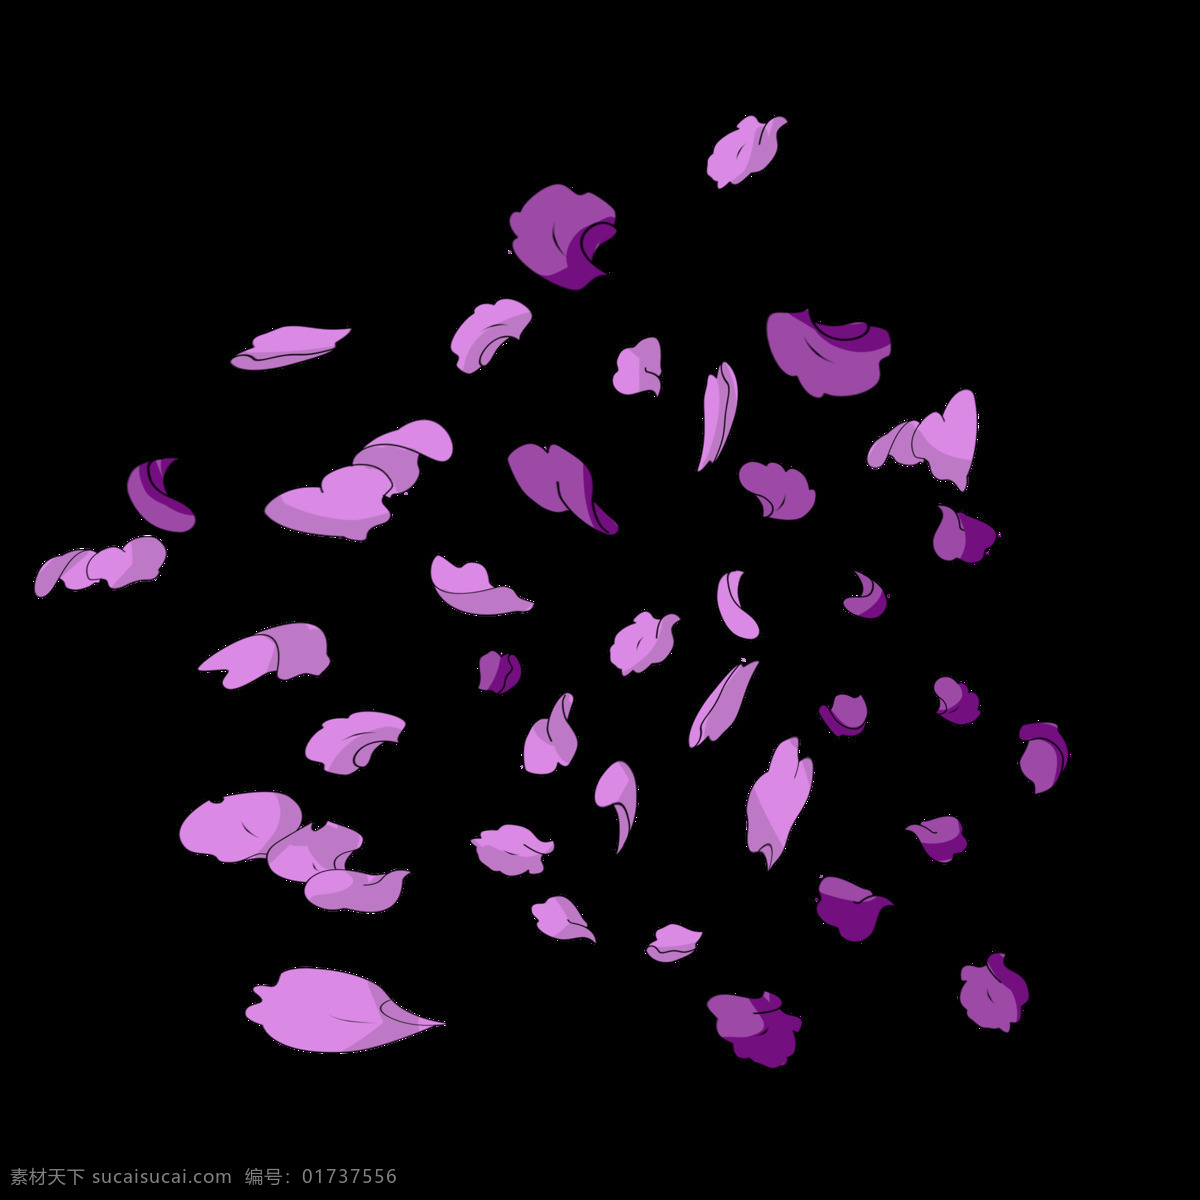 紫色 花瓣 手绘 插画 紫色的花瓣 漂亮的花瓣 漂浮花瓣 花瓣装饰 花瓣插画 可爱的花瓣 鲜花花瓣